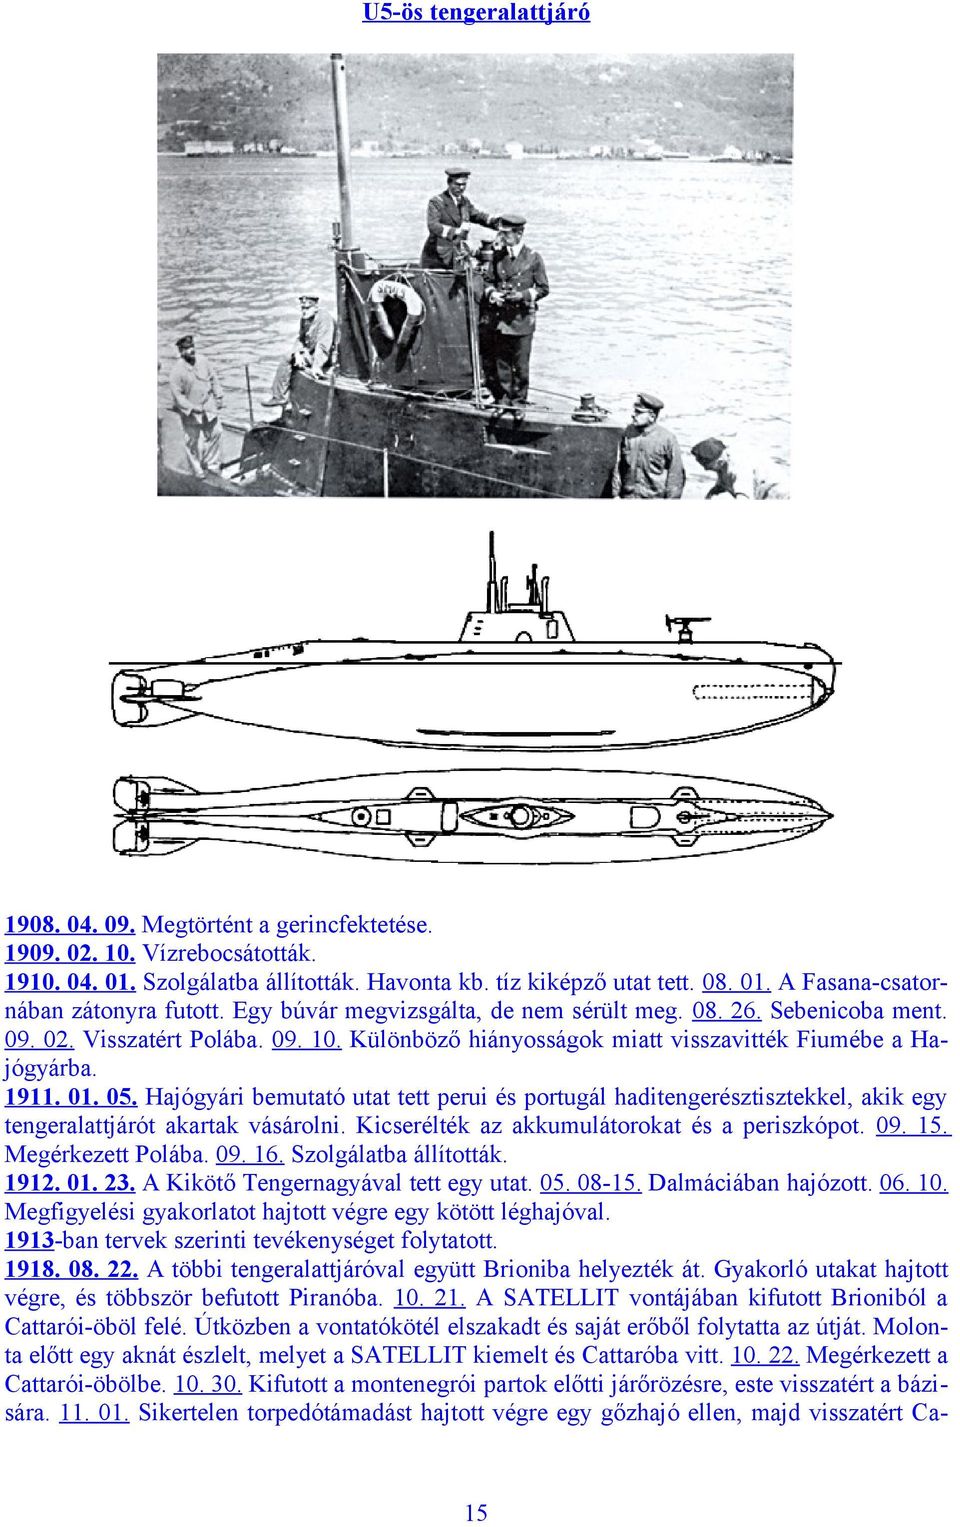 Hajógyári bemutató utat tett perui és portugál haditengerésztisztekkel, akik egy tengeralattjárót akartak vásárolni. Kicserélték az akkumulátorokat és a periszkópot. 09. 15. Megérkezett Polába. 09. 16.